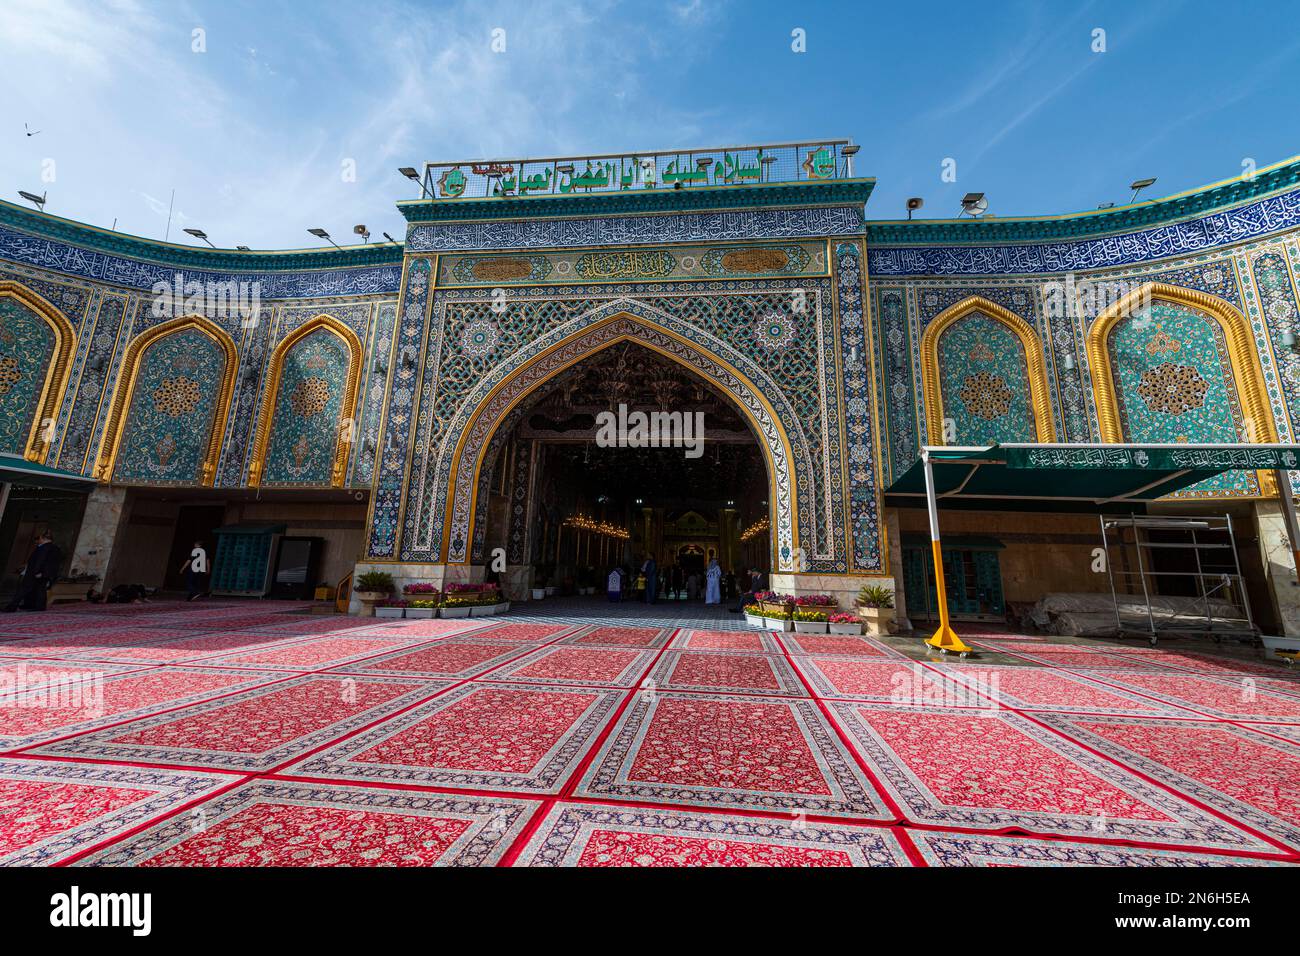 Imam Hussein Holy Shrine, Kerbala, Iraq Stock Photo